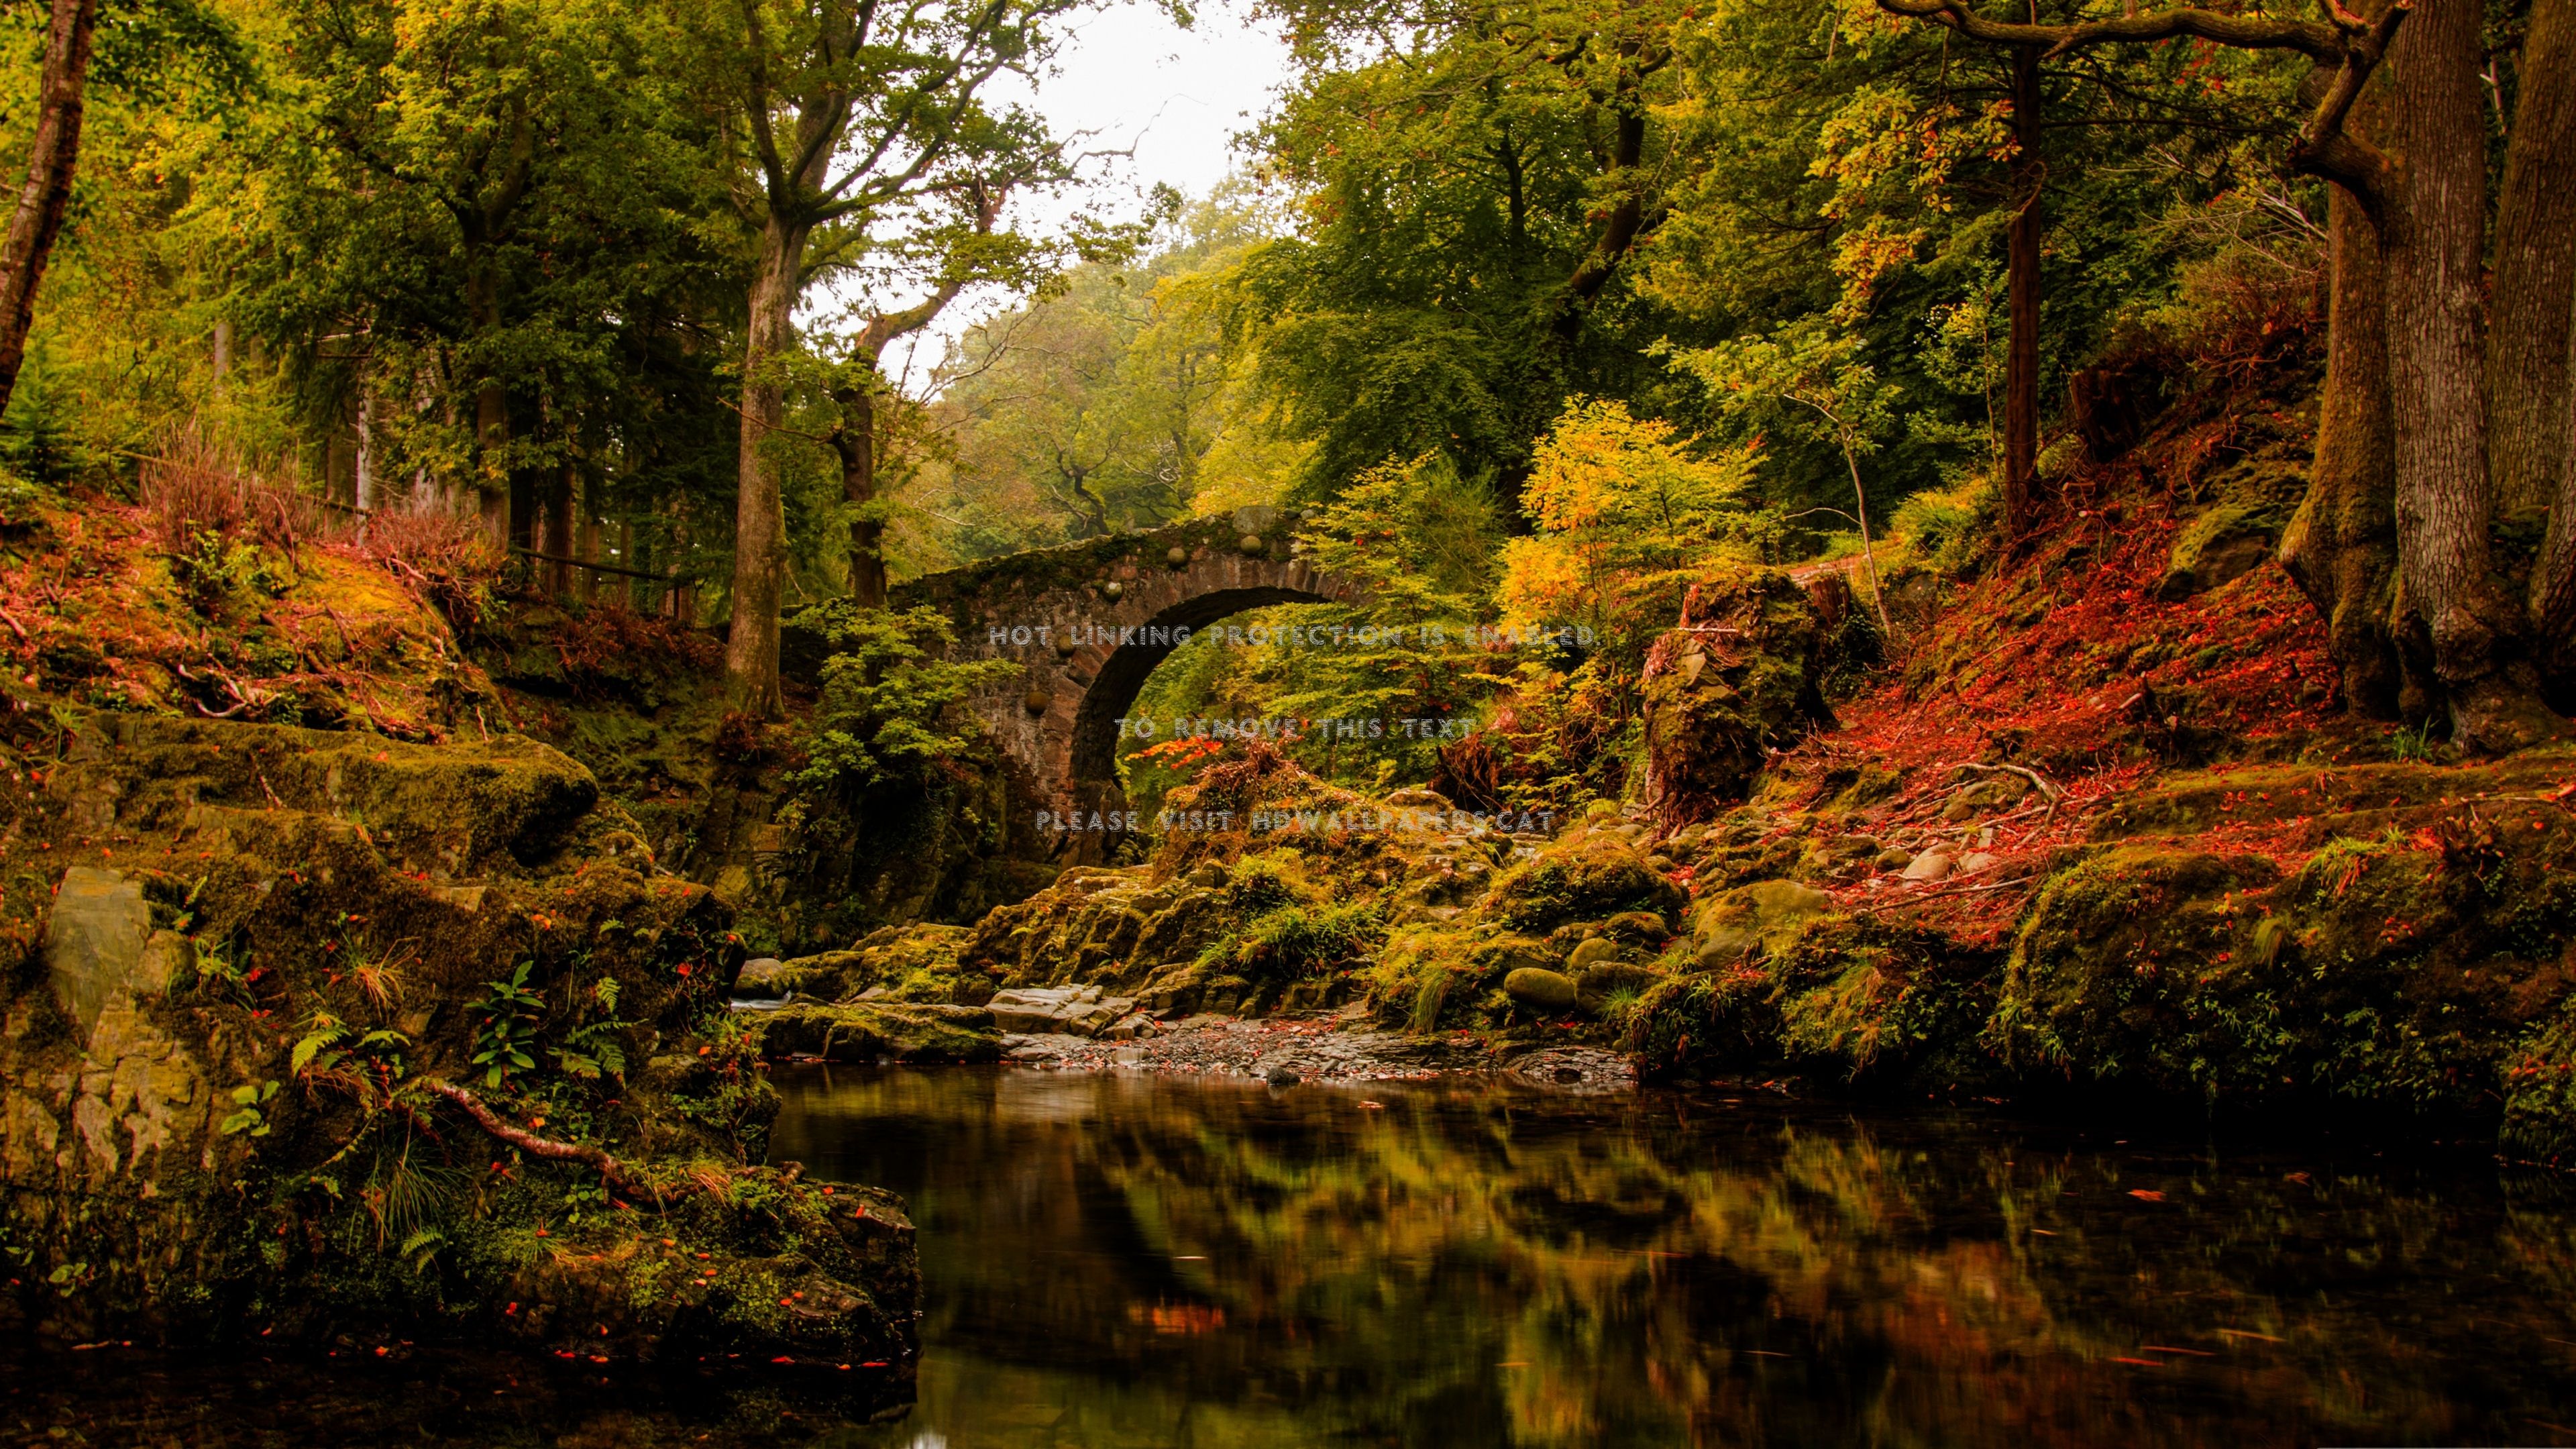 foley's bridge in autumn beautiful scenery